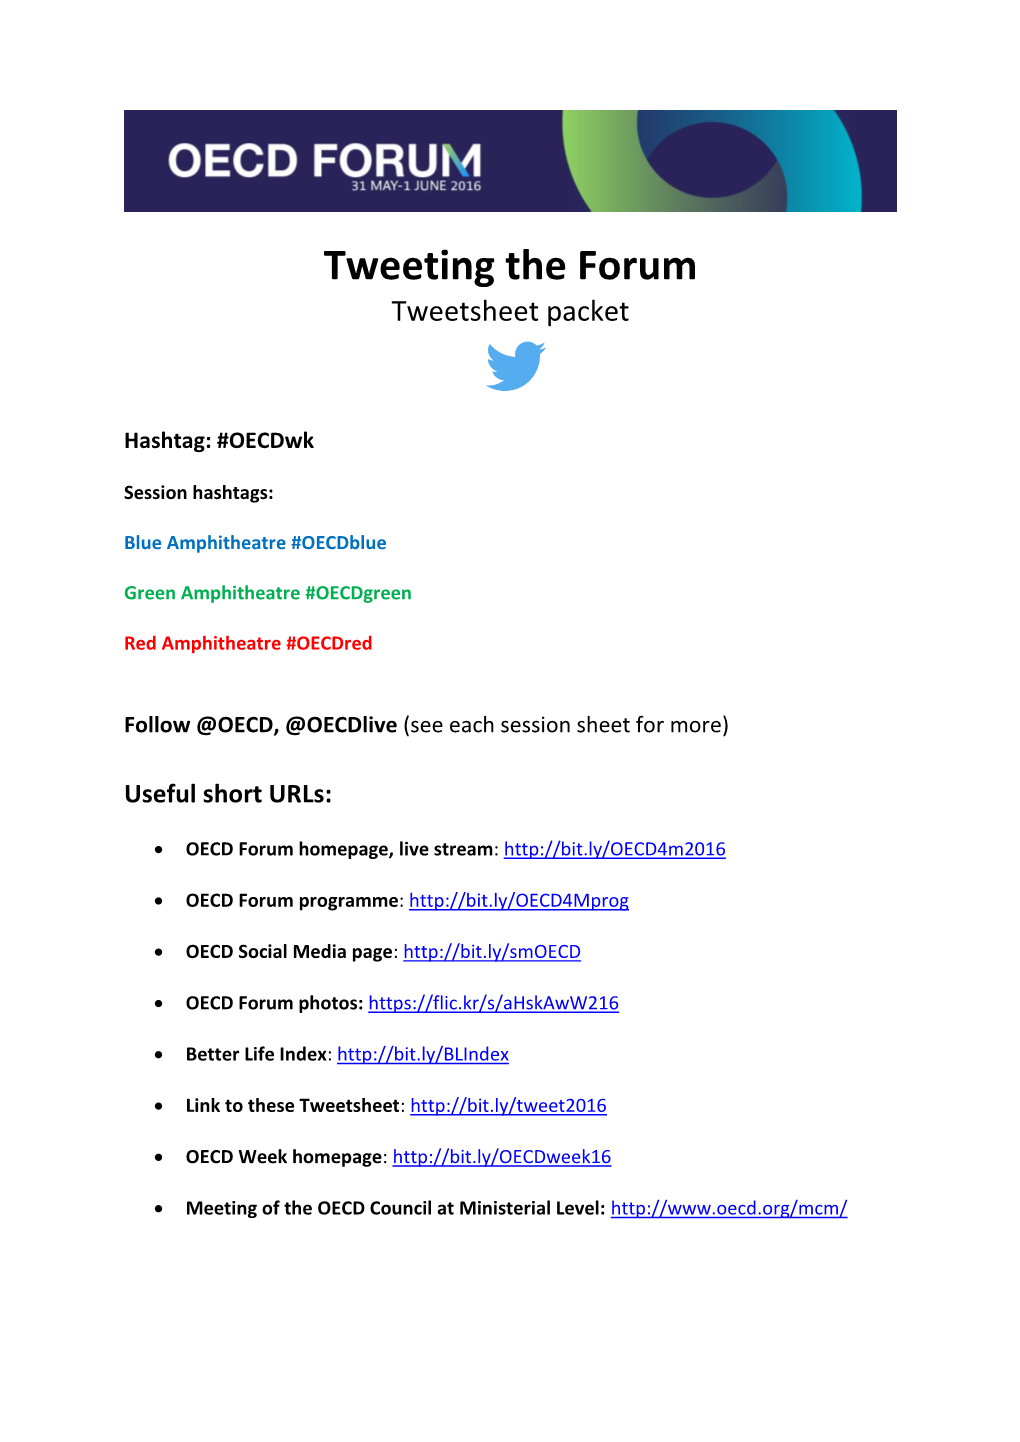 Tweeting the Forum Tweetsheet Packet